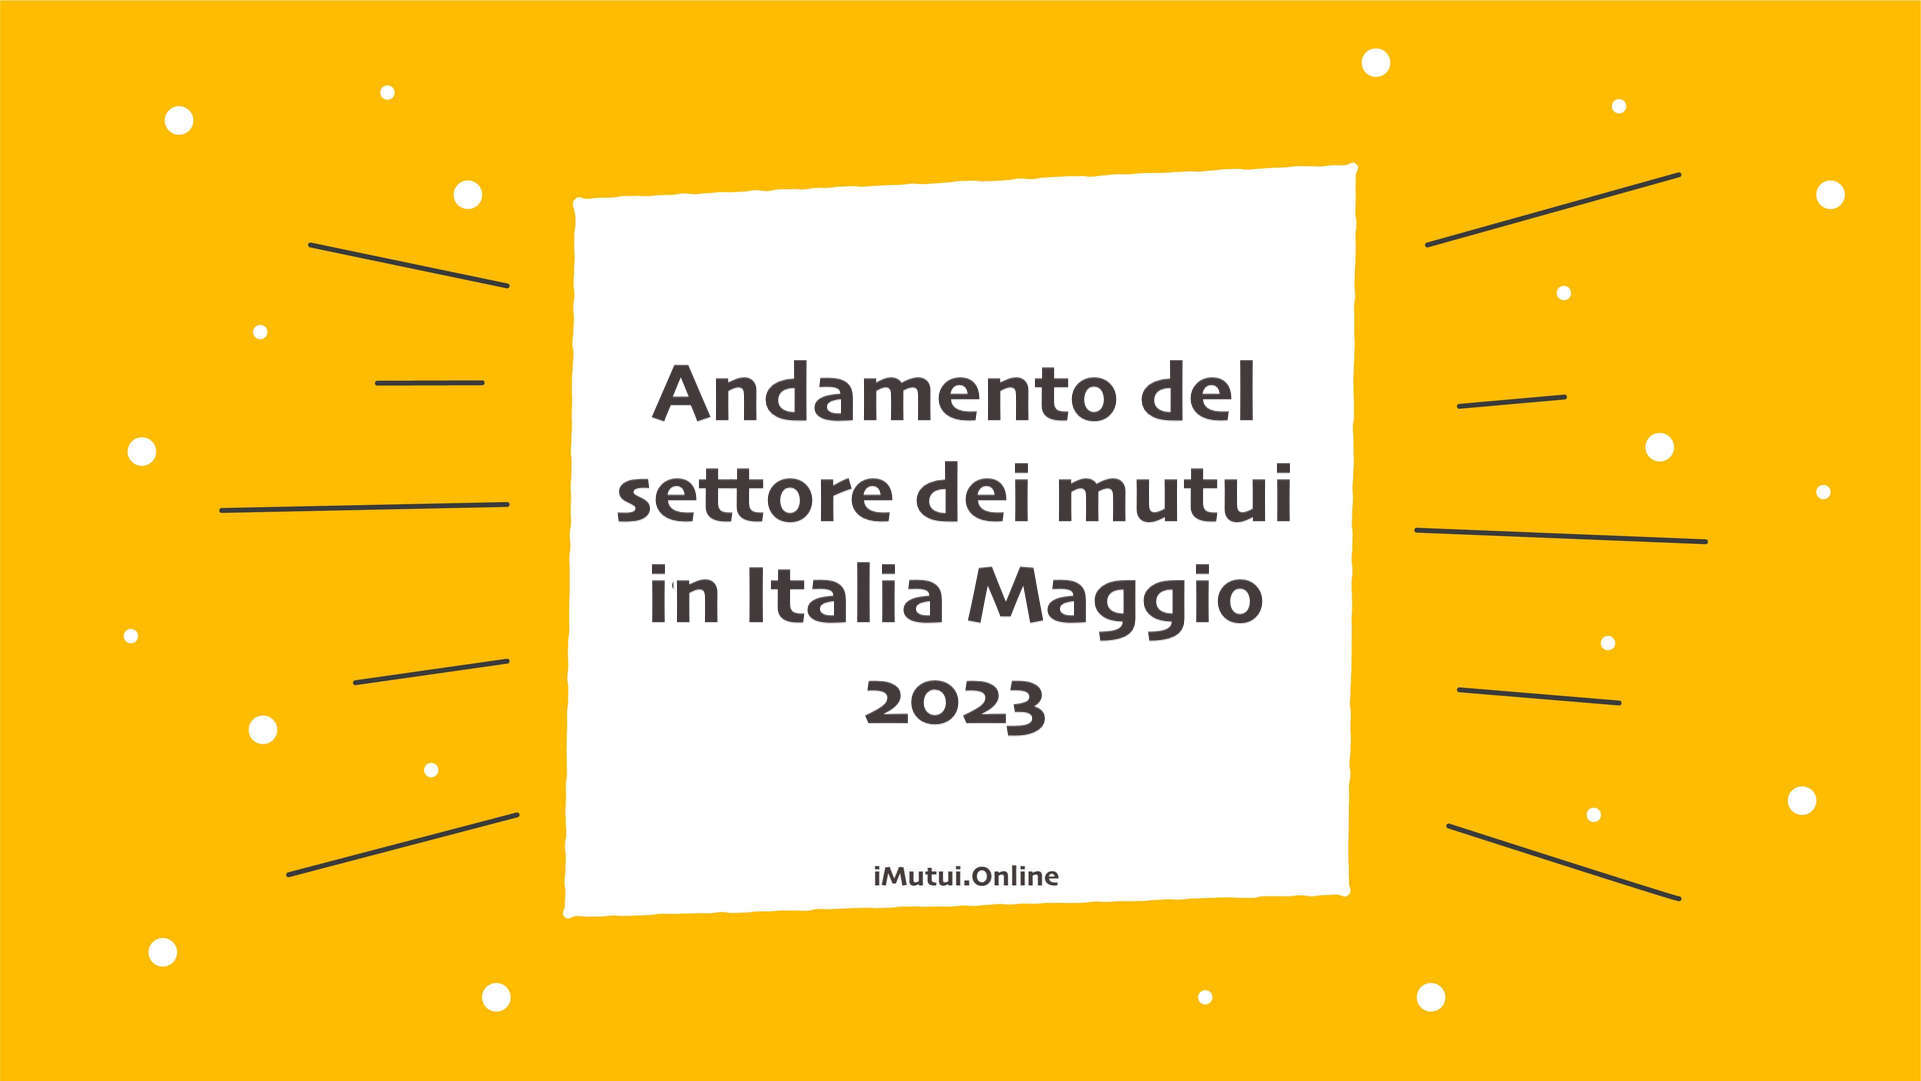 Andamento del settore dei mutui in Italia Maggio 2023